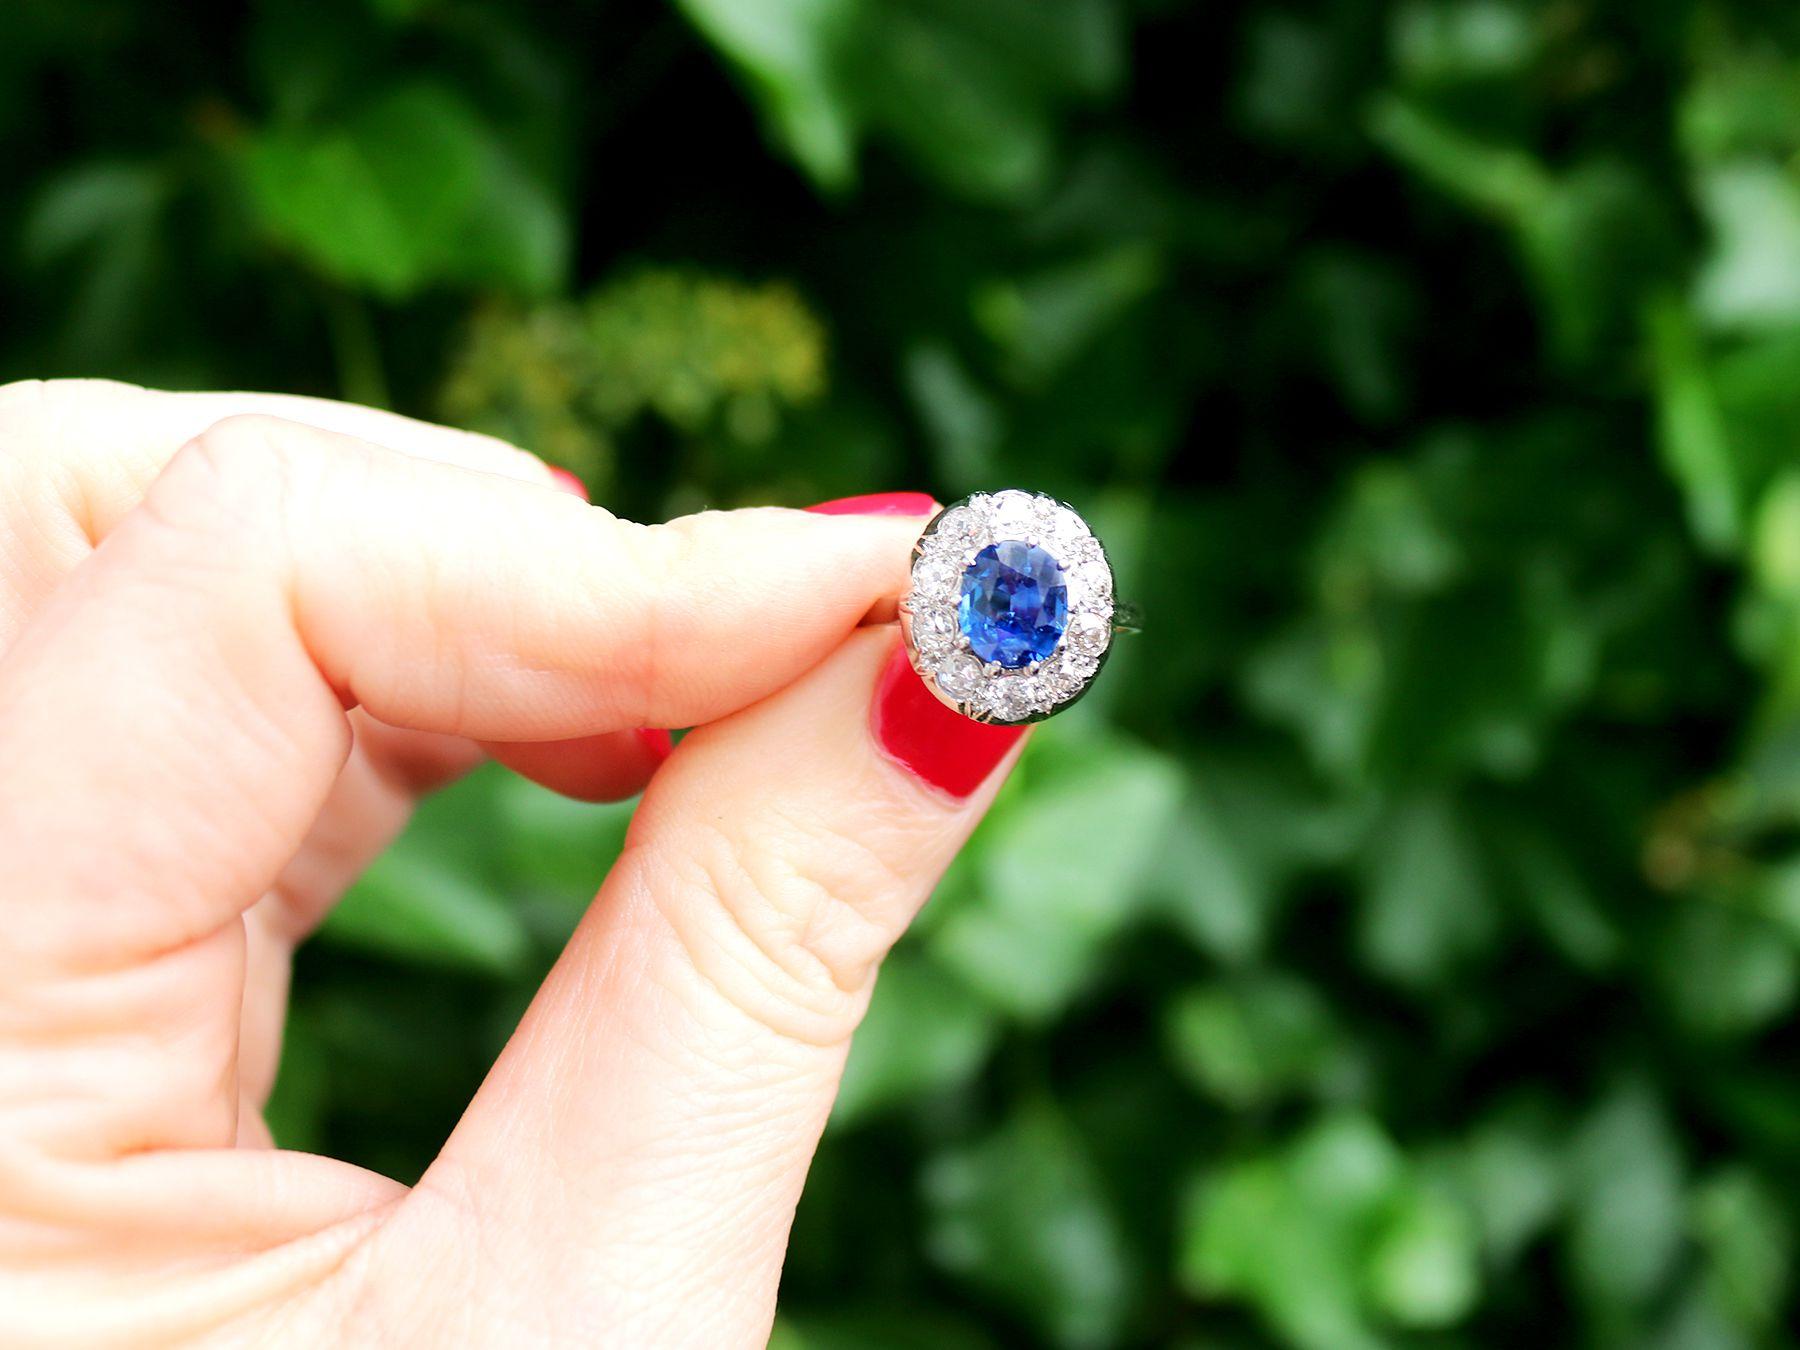 Eine atemberaubende Vintage Französisch 2,25 Karat unerhitzt blauer Saphir und 0,78 Karat Diamant, Platin-Cluster-Ring; Teil unserer vielfältigen Vintage-Schmuck-Kollektionen.

Dieser atemberaubende, feine und beeindruckende Ring mit einem